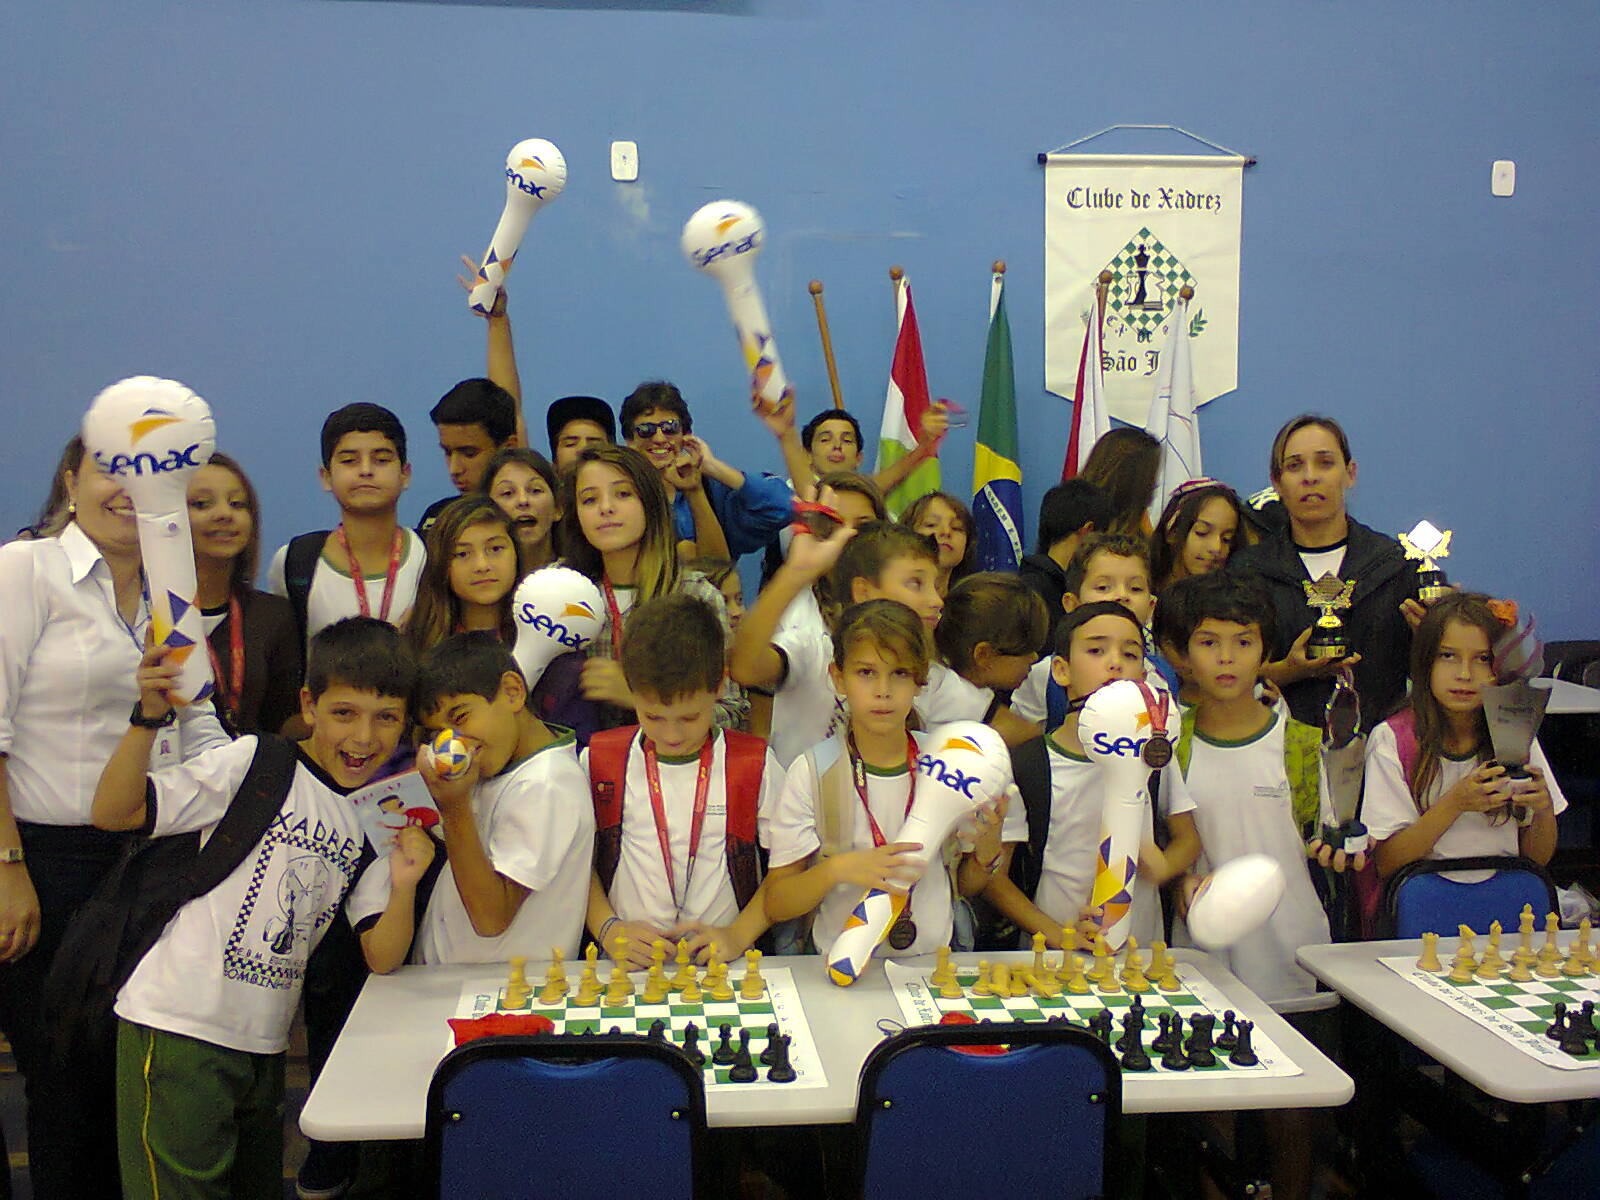 Clube Escolar de Xadrez